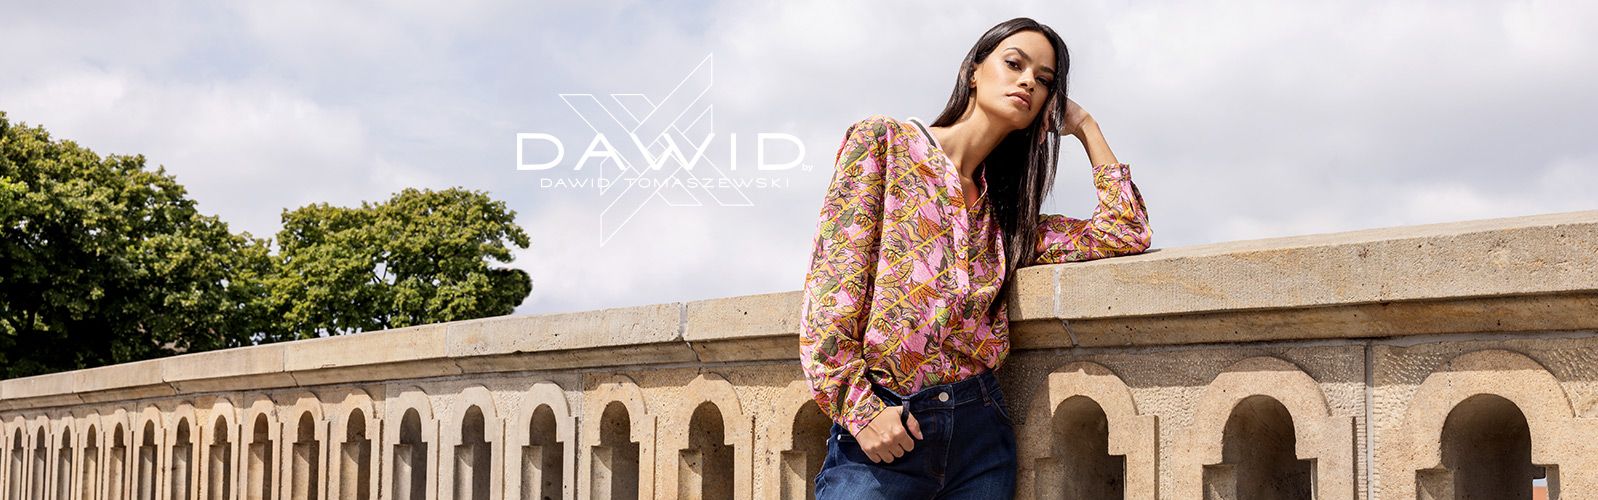 DAWID by Dawid Tomaszewski Mode